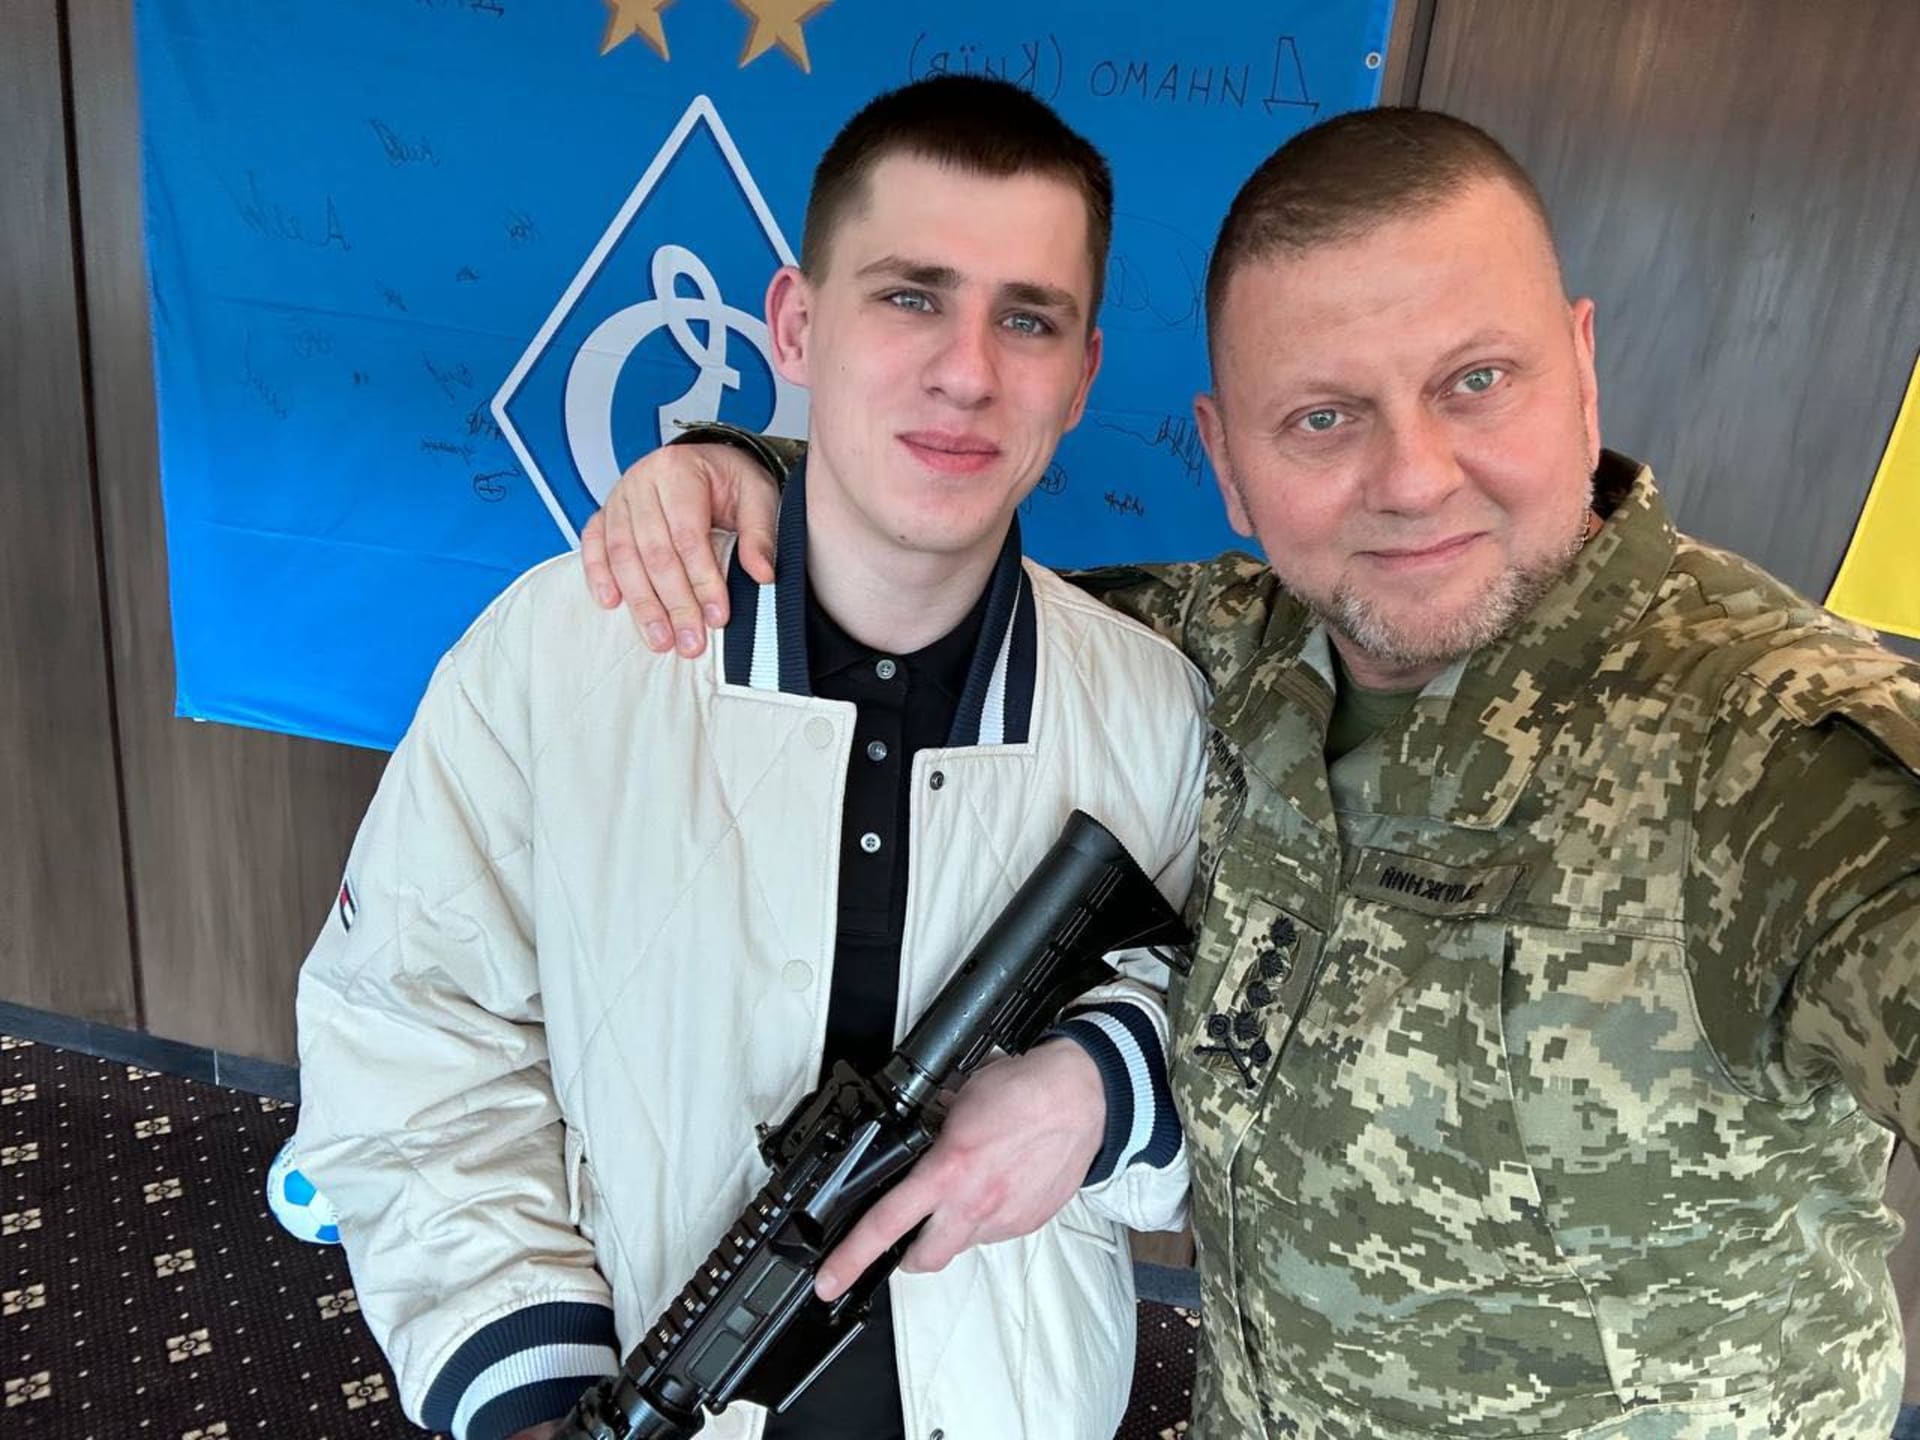 Ukrajinský voják Ruslan Zubarev, který pořídil video z první osoby ukazující autentické záběry z těch nejdrsnějších zákopových bojů, obdržel vyznamenání Zlatý kříž.